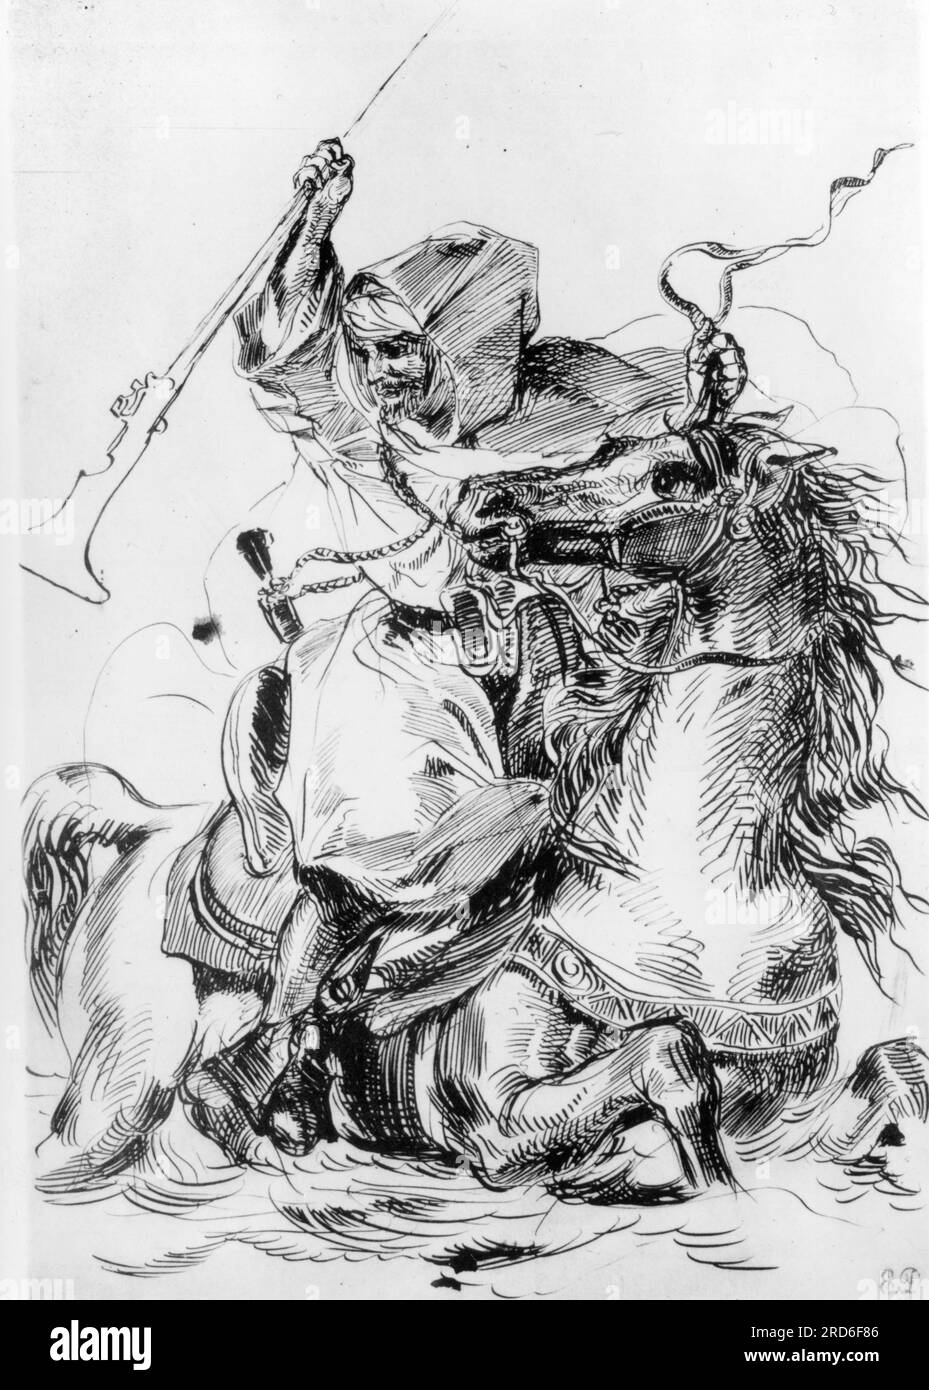 Menschen, ethnische Zugehörigkeit, Berber, ein arabischer Reiter überquert einen Fluss, zieht von Eugene Delacroix, ZUSÄTZLICHE-RECHTE-FREIGABE-INFO-NICHT-VERFÜGBAR Stockfoto